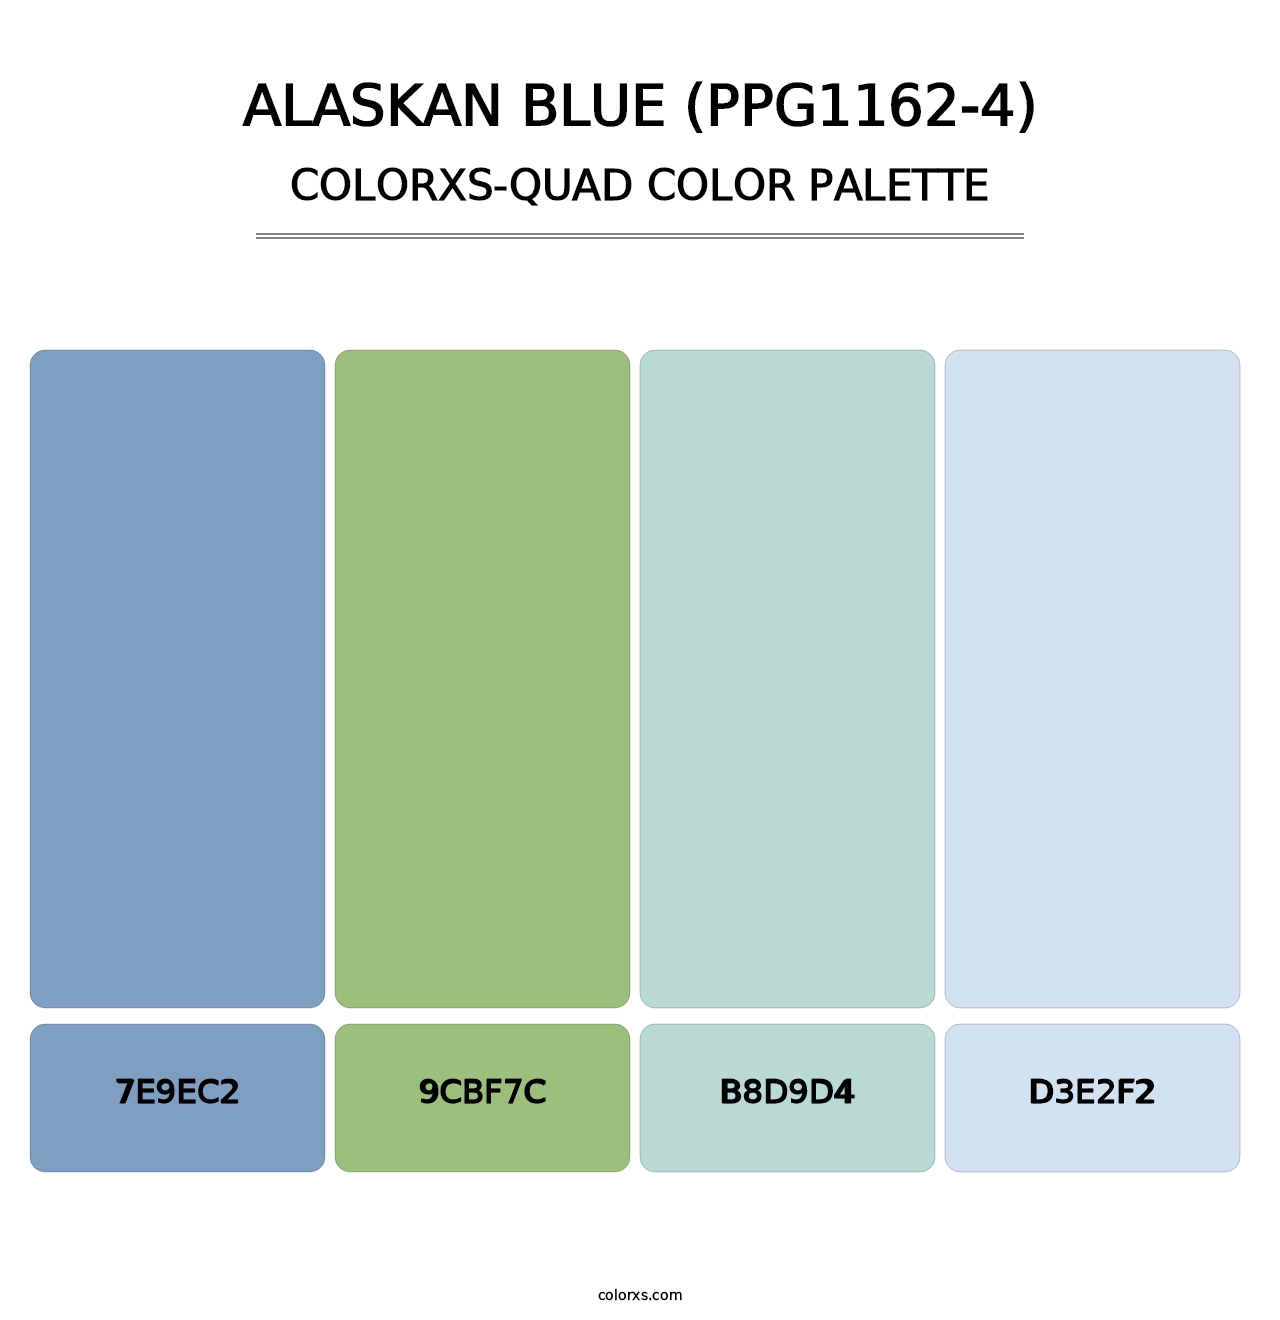 Alaskan Blue (PPG1162-4) - Colorxs Quad Palette